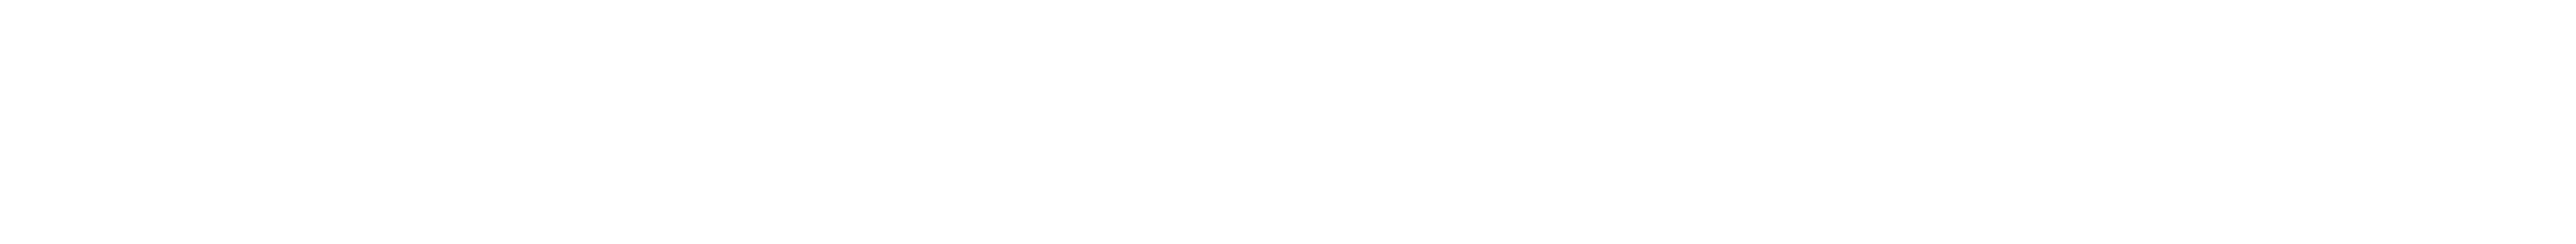 @ SocialGood, Inc.